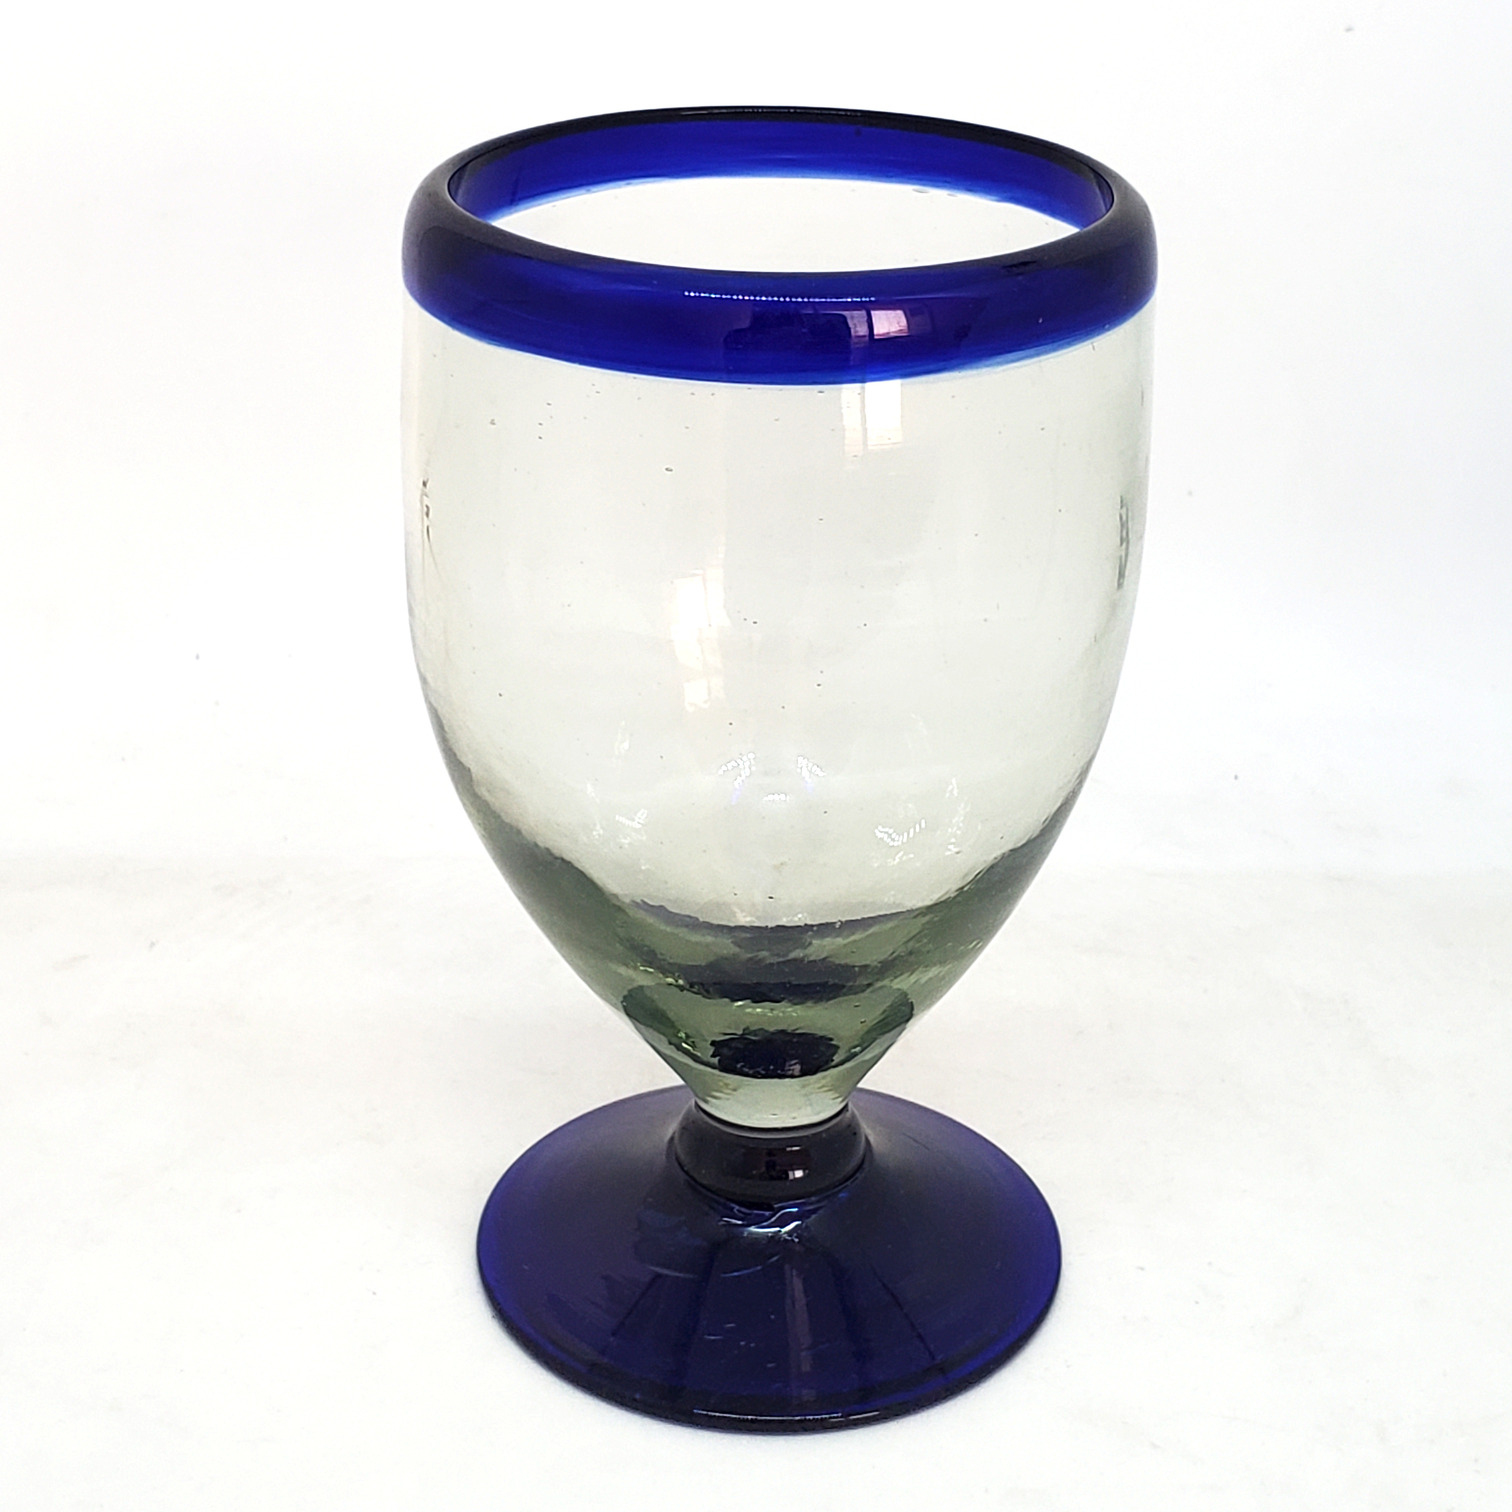  / Cobalt Blue Rim 12 oz Short Stem Wine Glasses (set of 6)